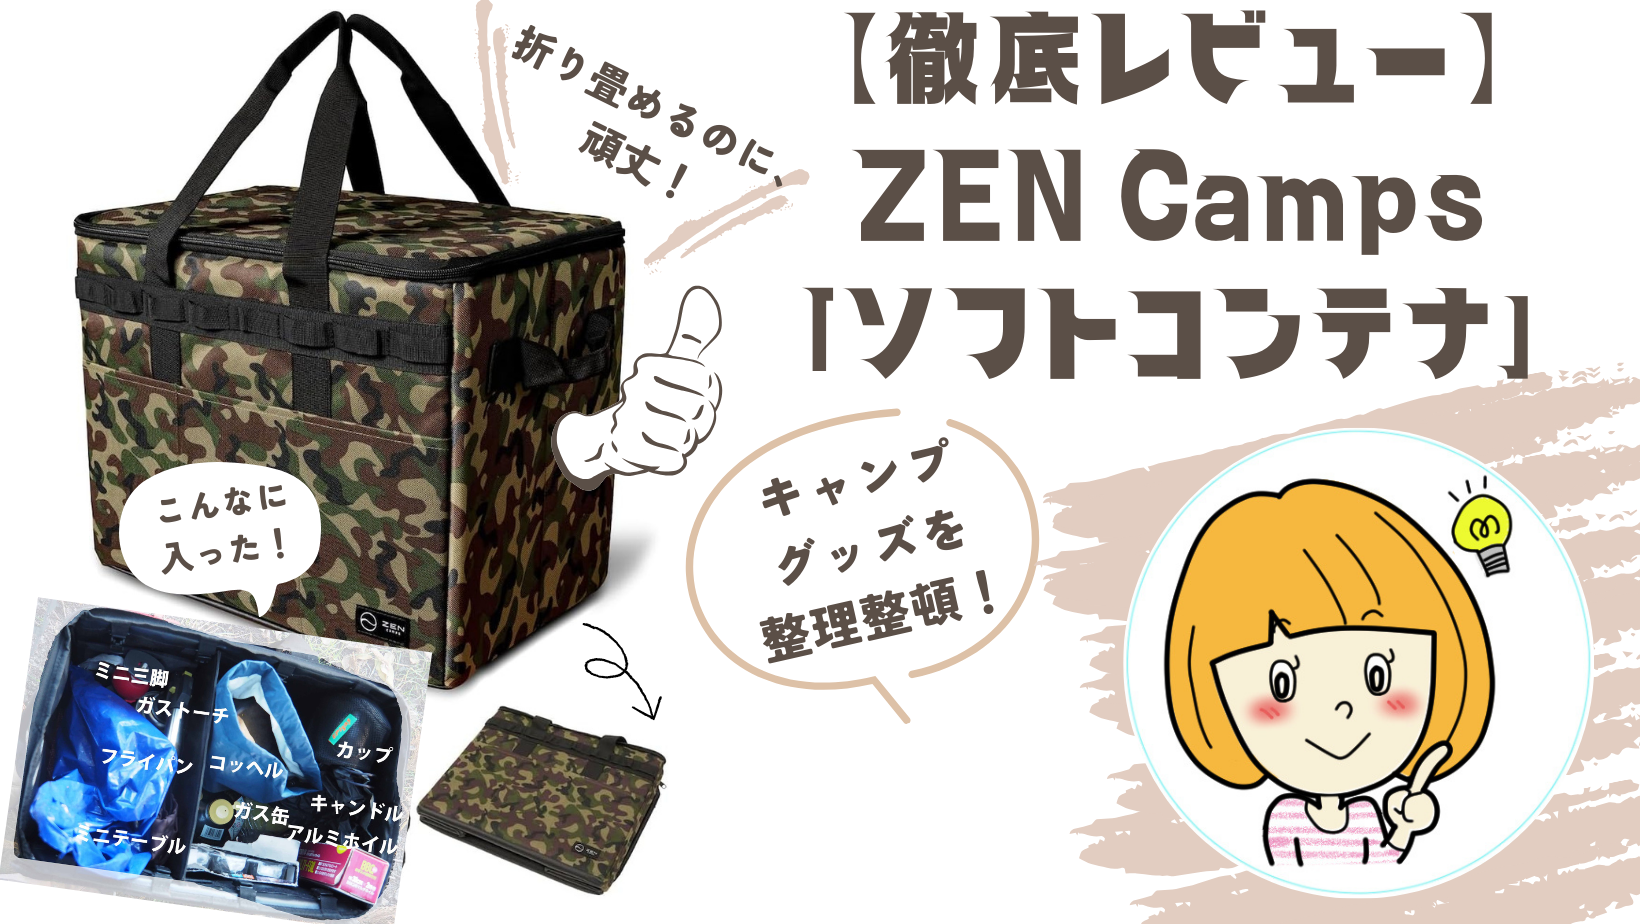 【レビュー】ZEN Camps「ソフトコンテナ」ソロキャンプ・車中泊にさっと出せるタフなBOX